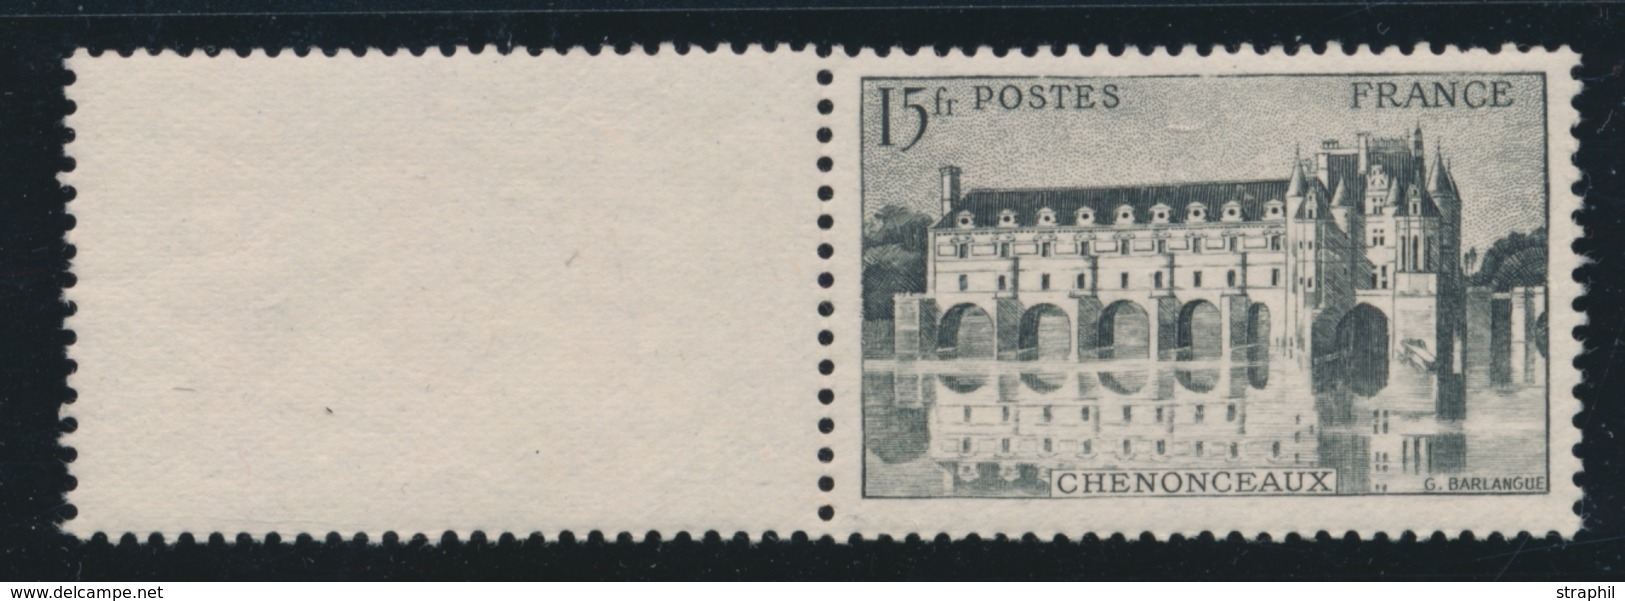 * VARIETES - * - N°610c - Chenonceaux - En Brun Noir - Signé A. Brun - TB - Unused Stamps